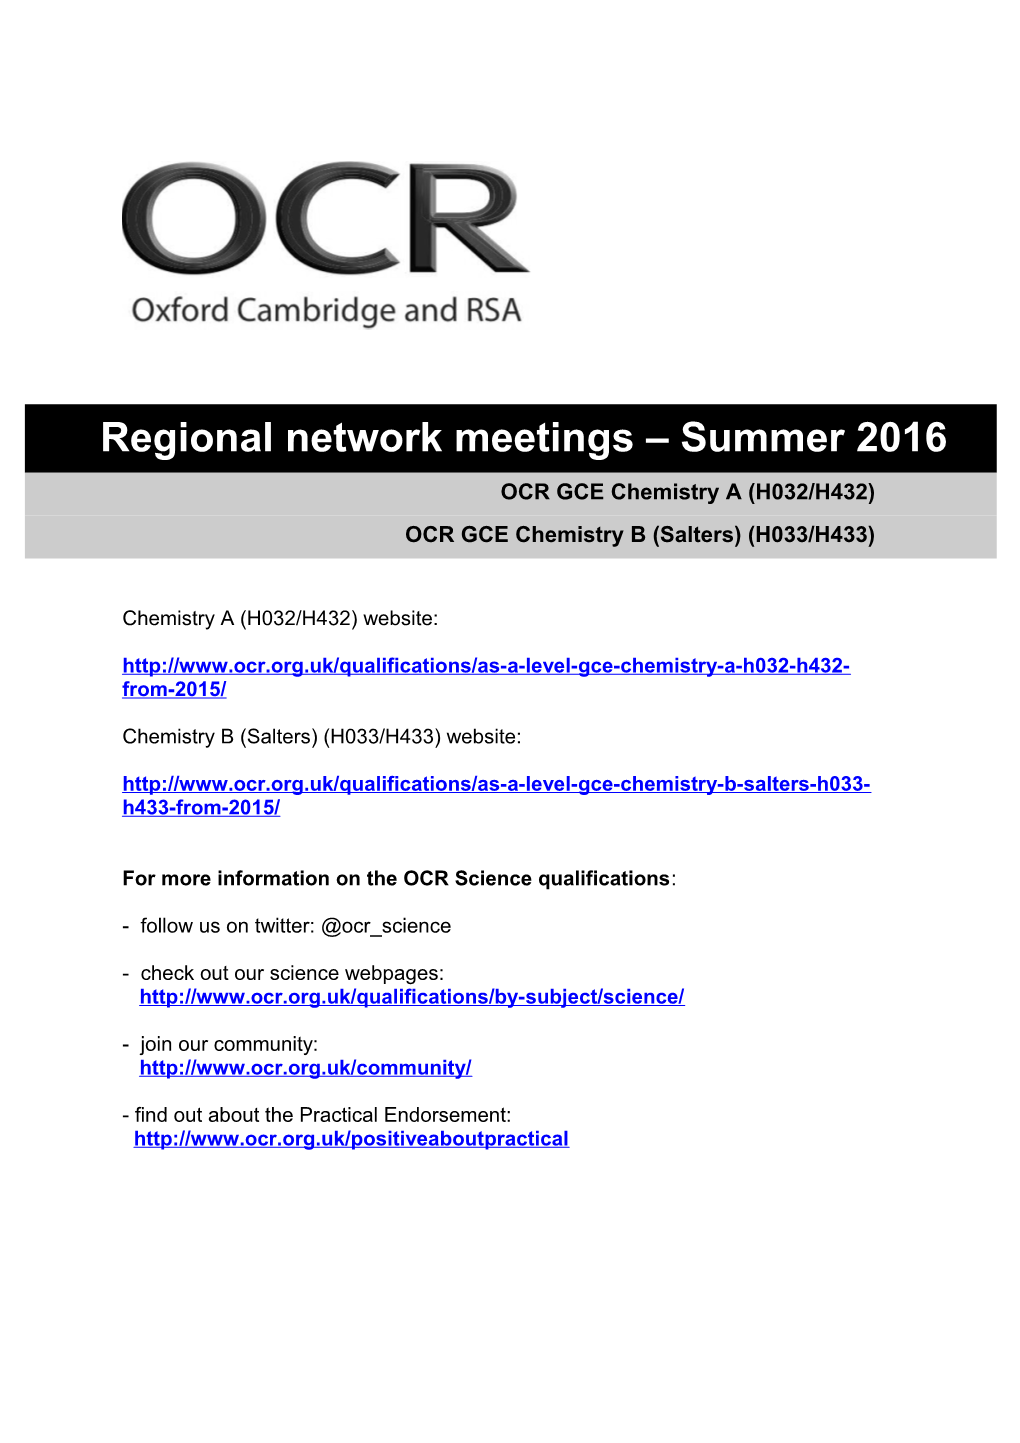 Regional Network Meetings Summer 2016